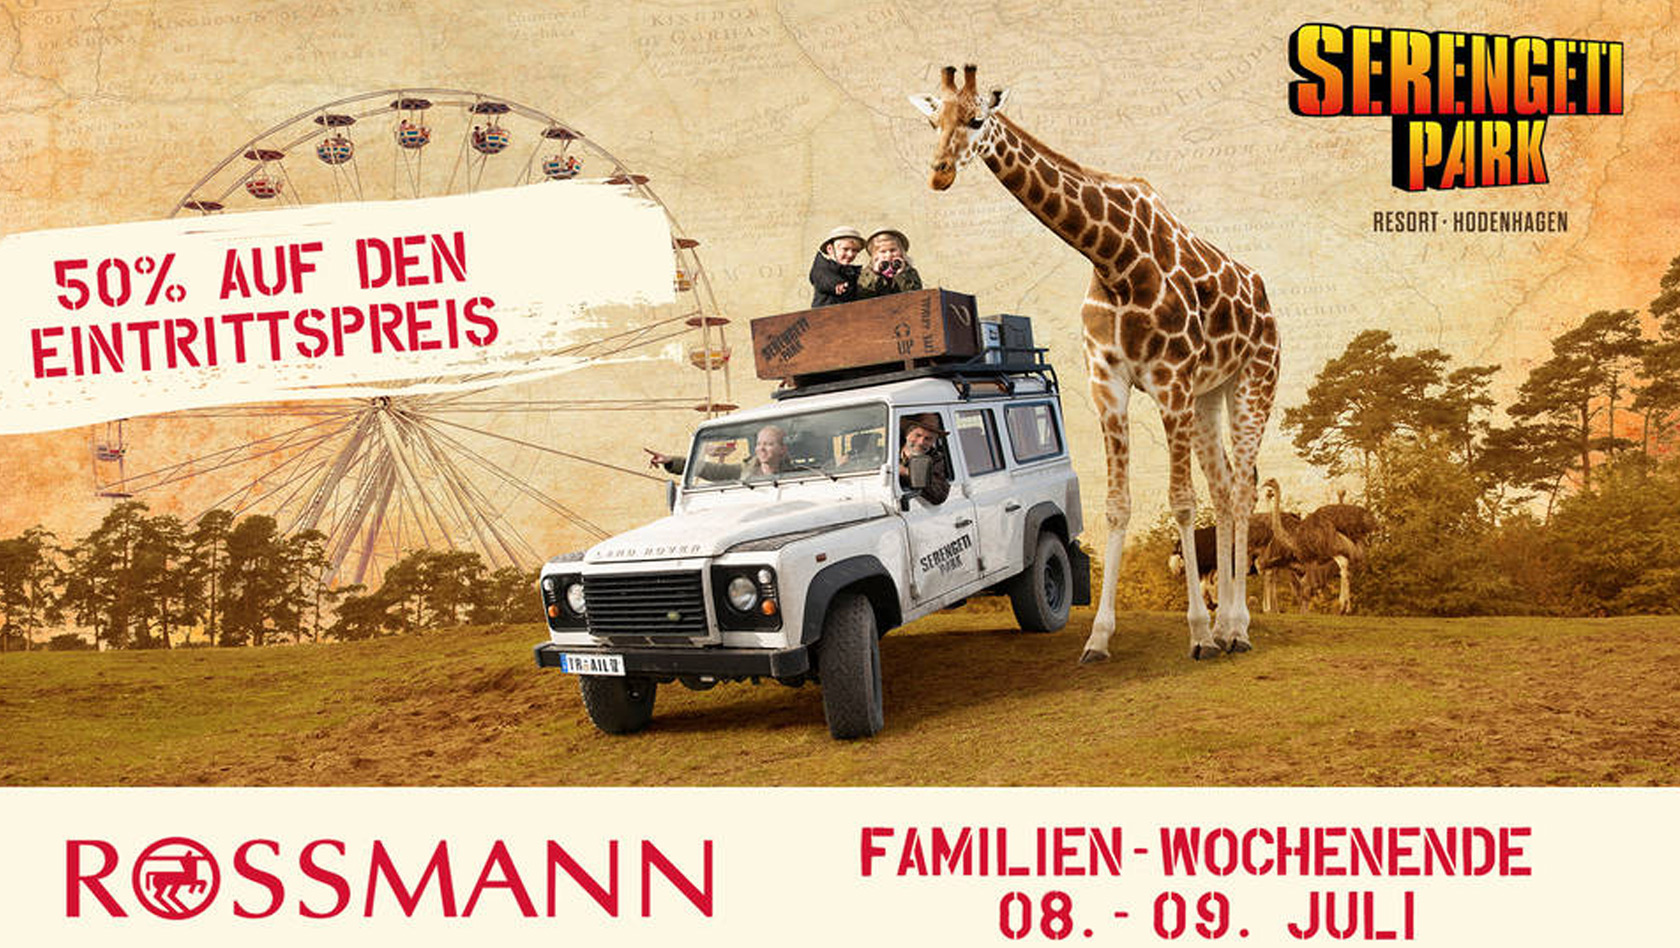 Serengeti-Park Rossmann Aktion Gutschein 2017